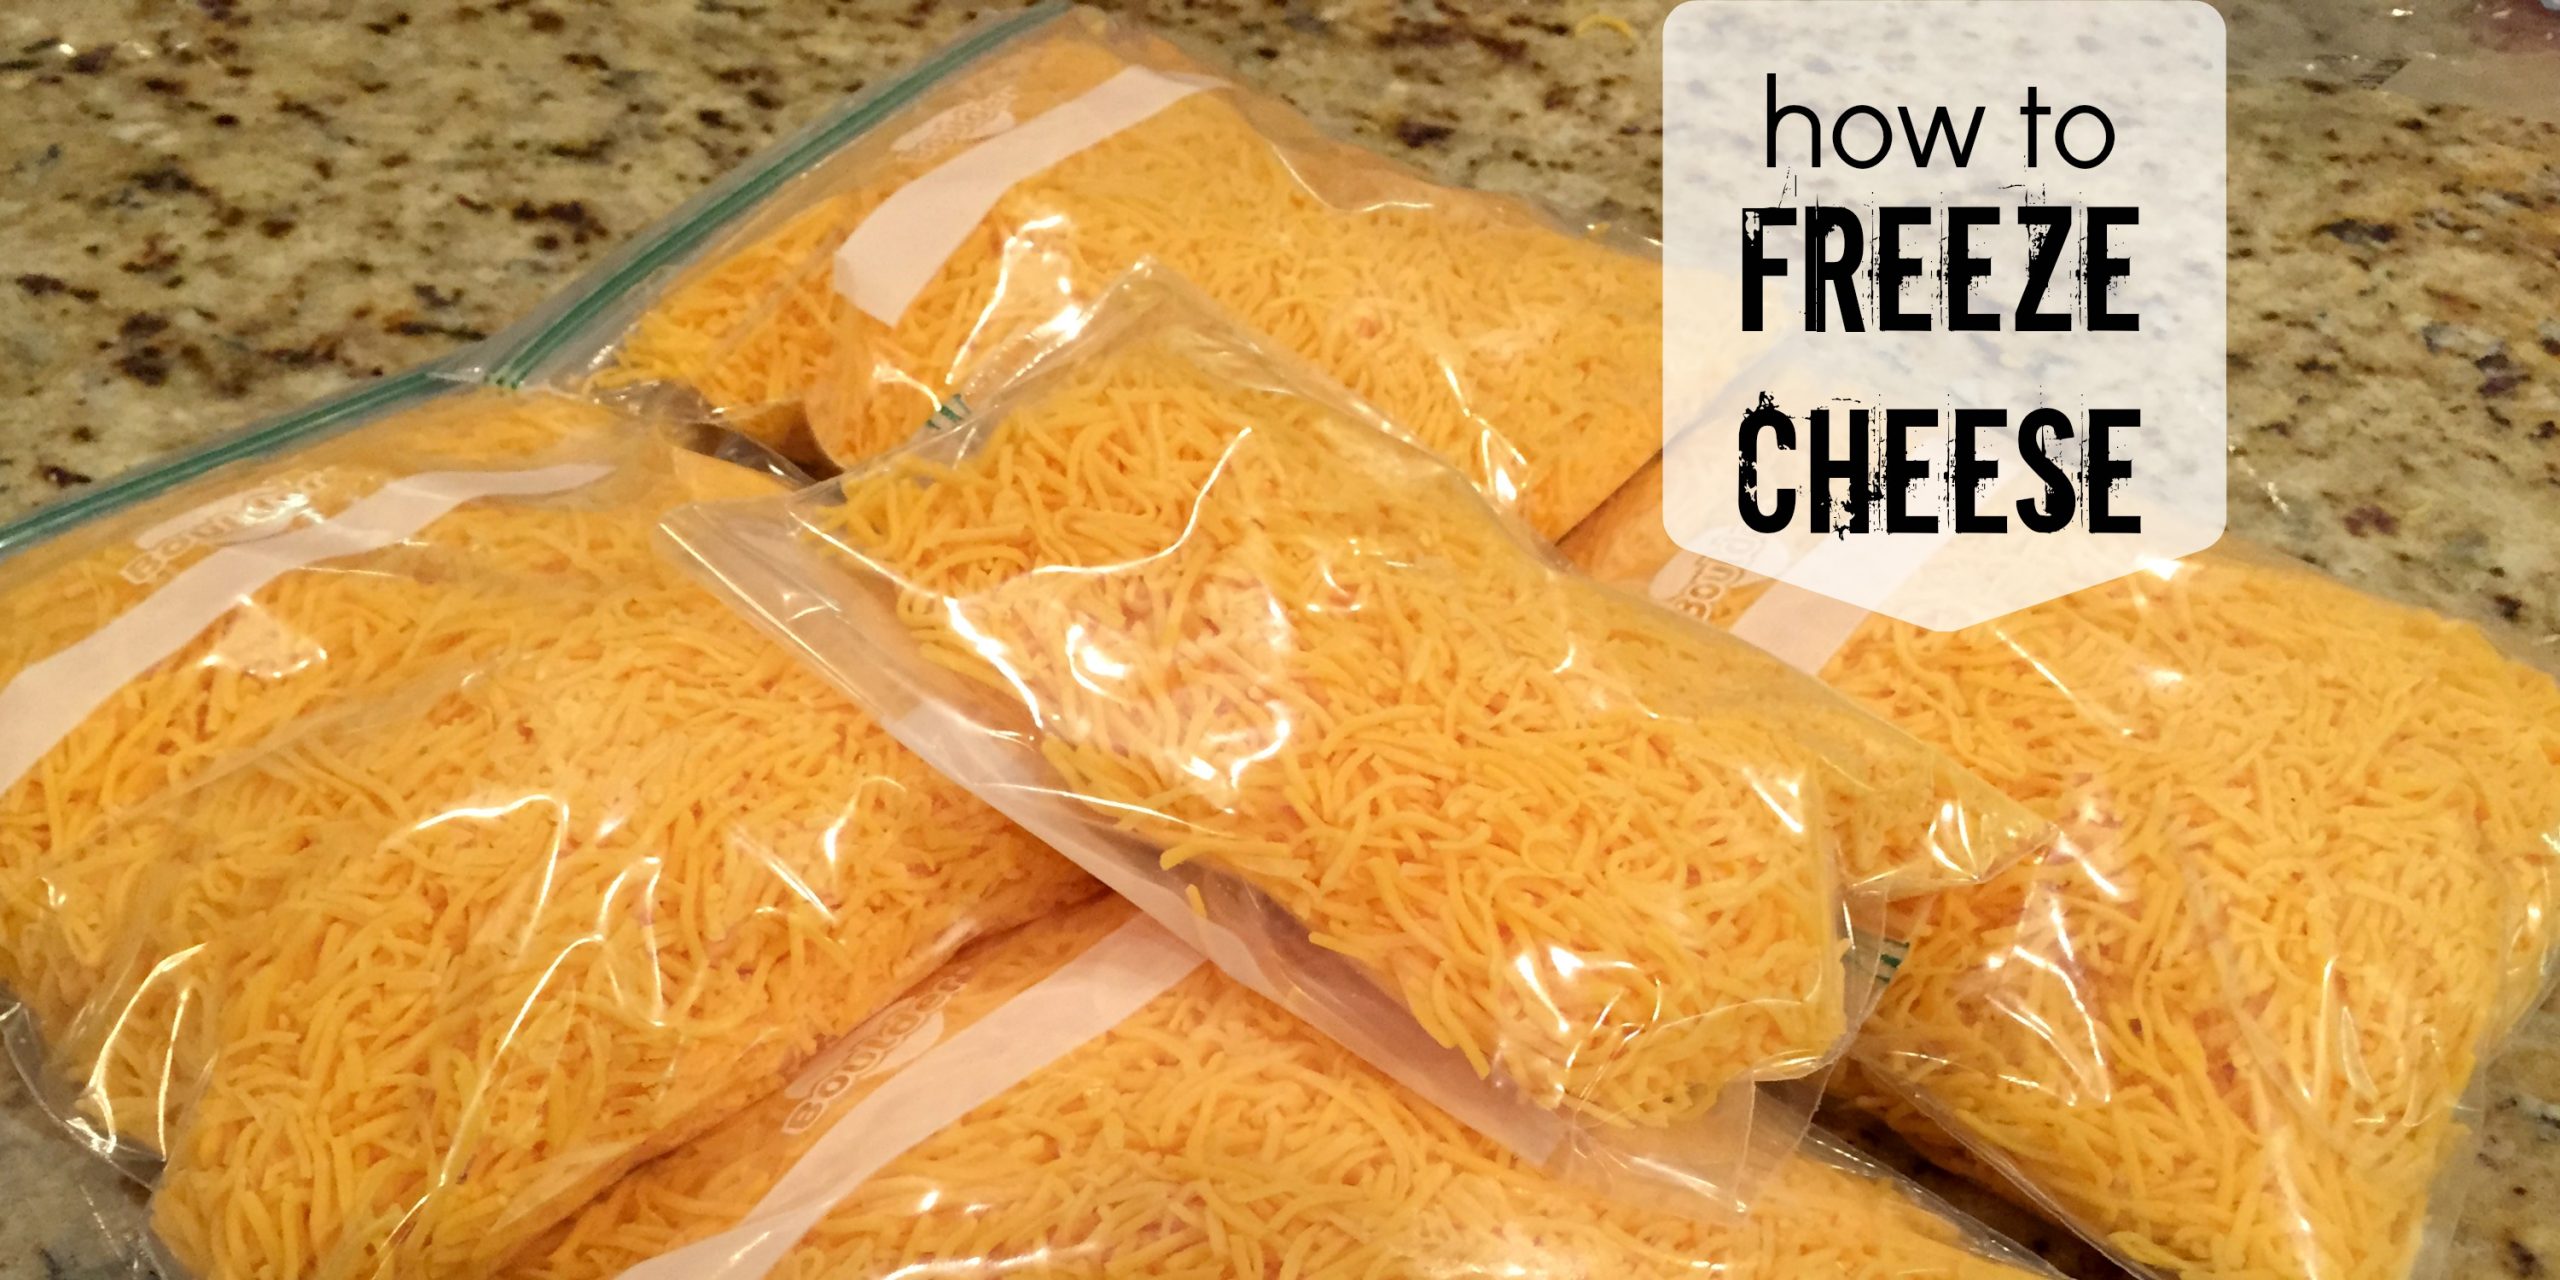 Puoi congelare il formaggio? Sì! Impara come congelare il formaggio con questi semplici passaggi. Inoltre il formaggio congelato può aiutarti a risparmiare denaro.